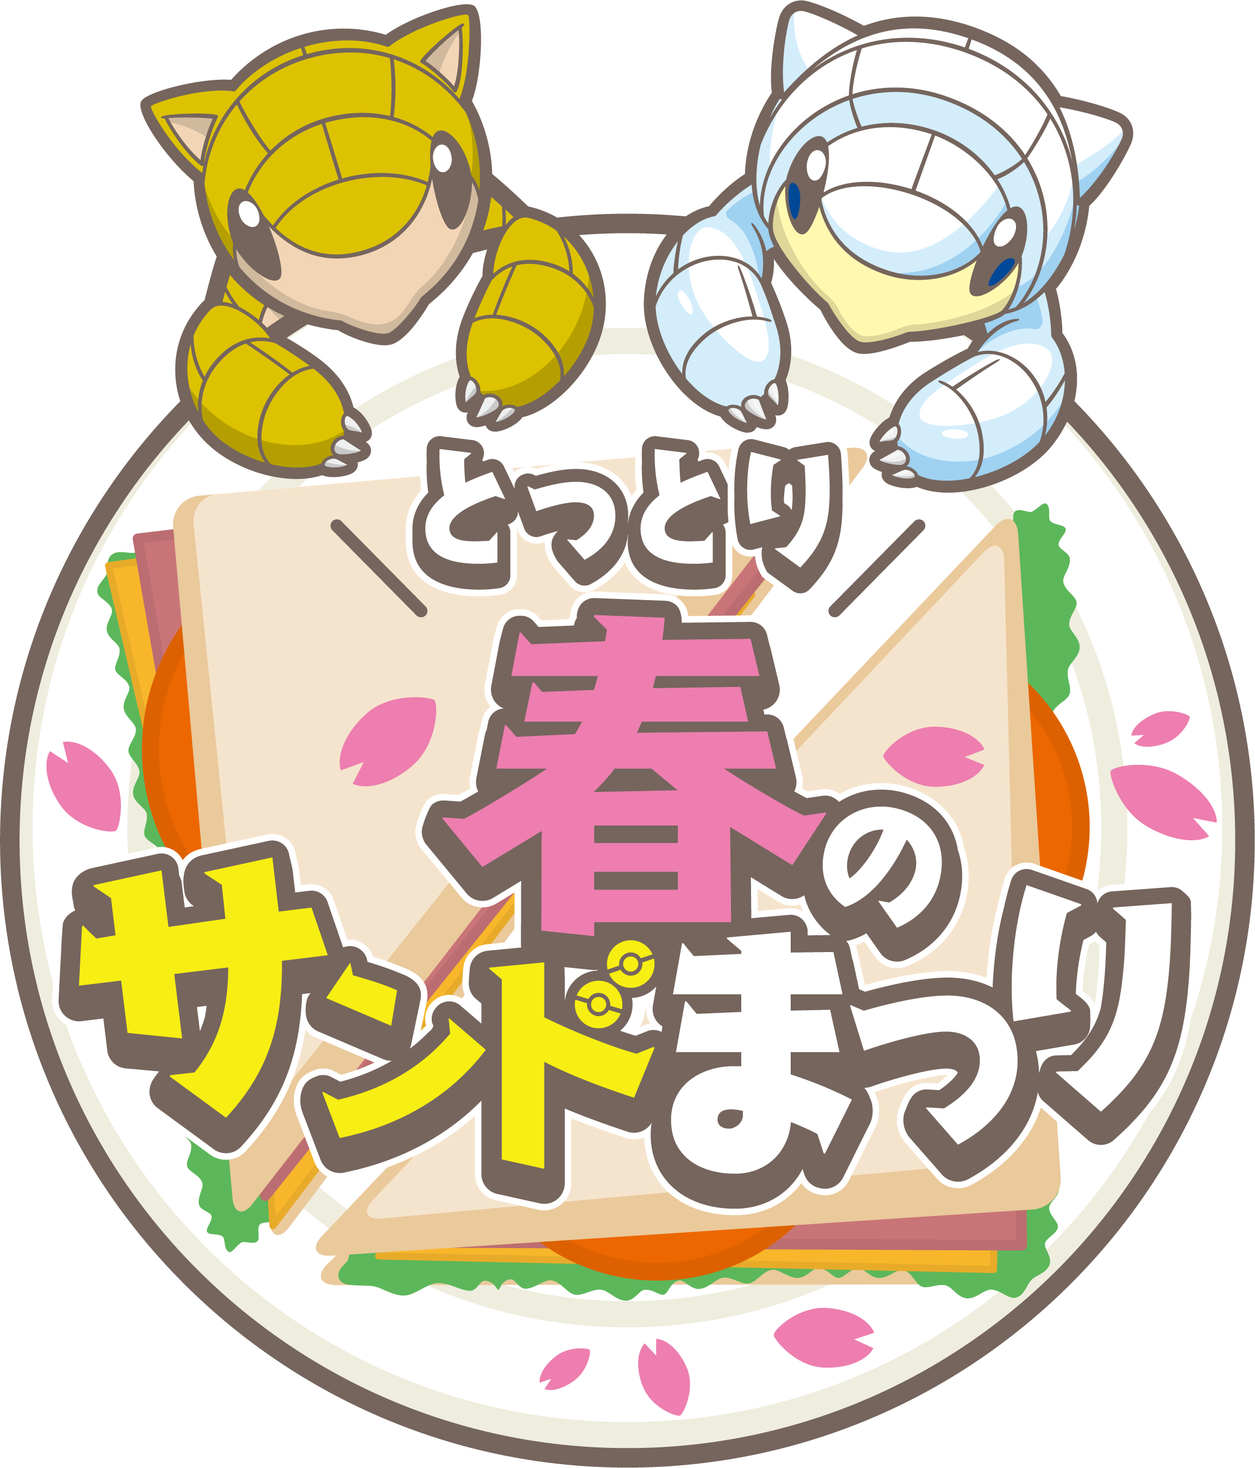 とっとりふるさと大使 サンド キャンペーン とっとり春のサンドまつり19 初開催 鳥取県のプレスリリース